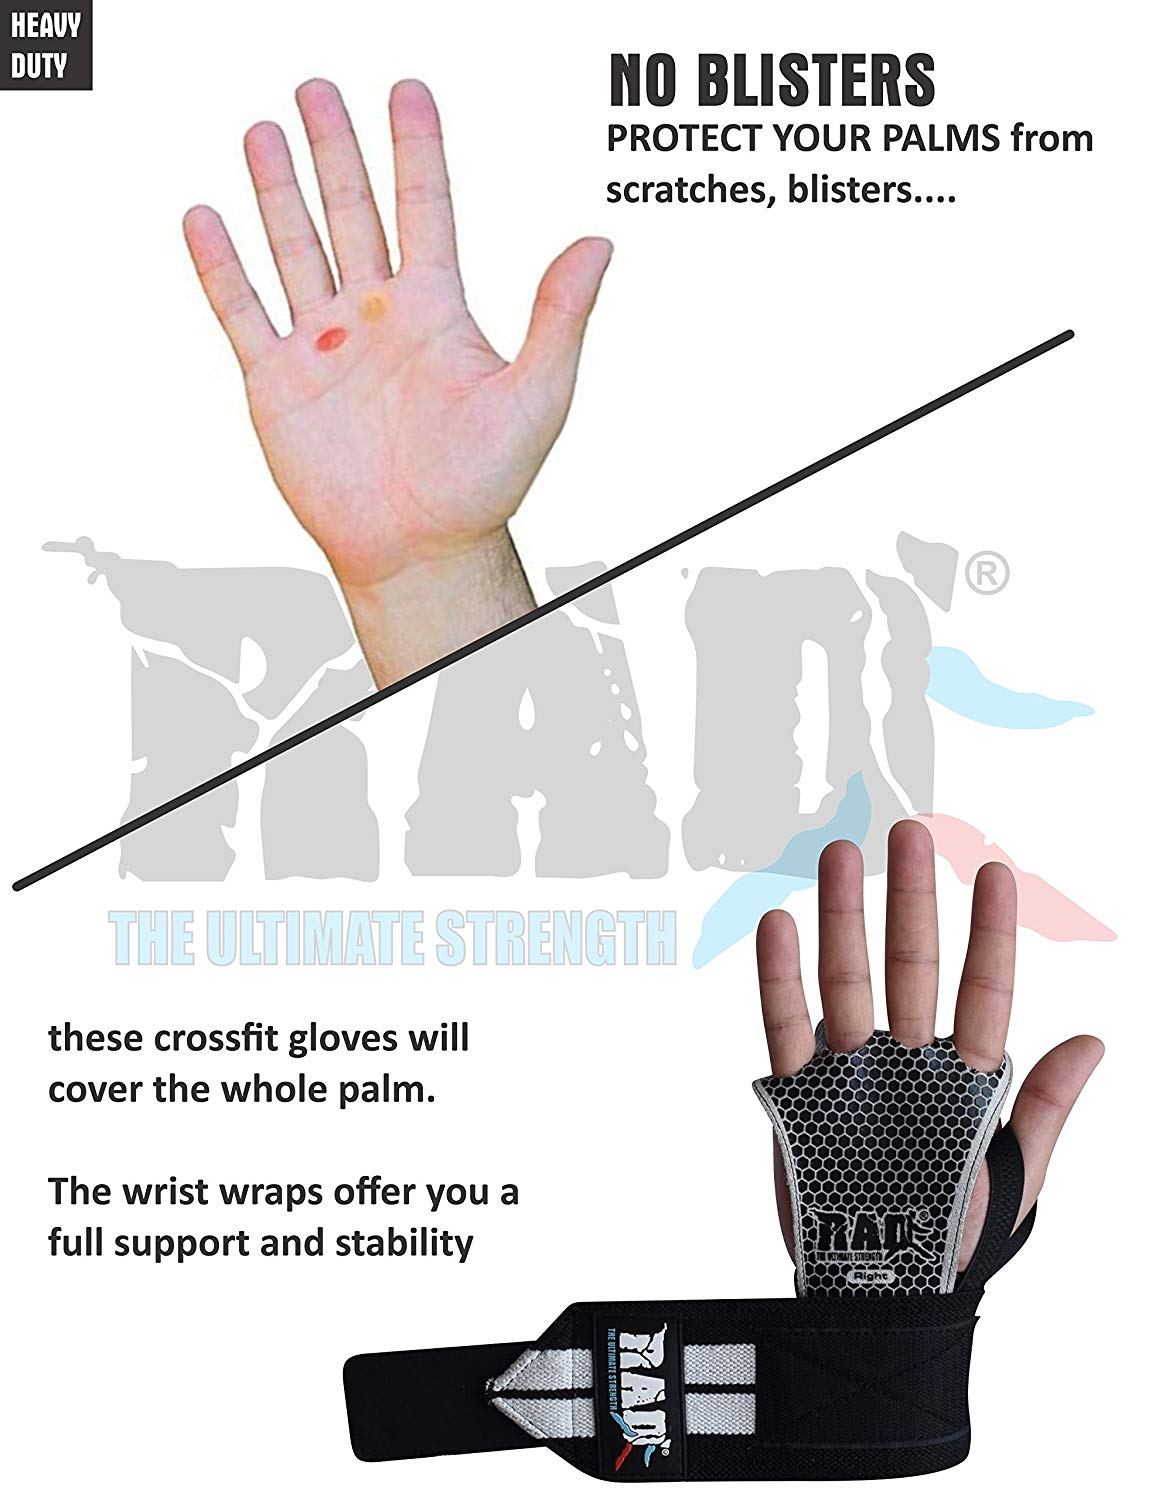 hand grip